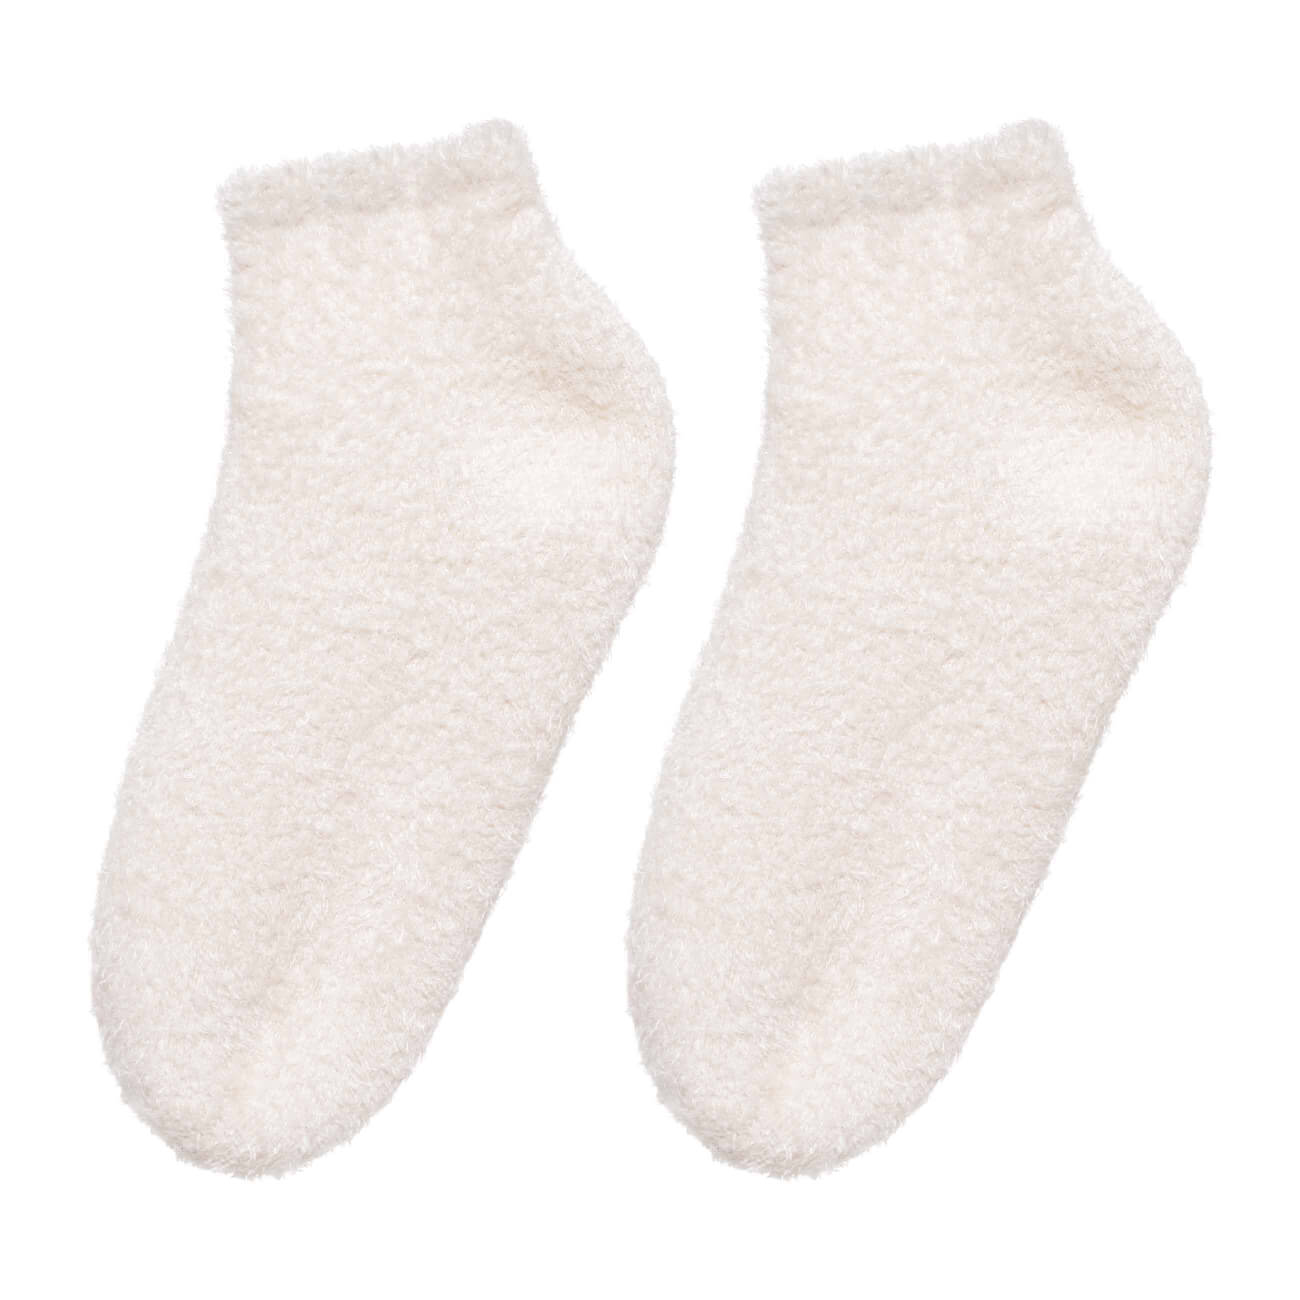 СПА-носки гелевые, р. 36-40, многоразовые, полиэстер, молочные, Spa корректоры гелевые olvist для пальцев ног